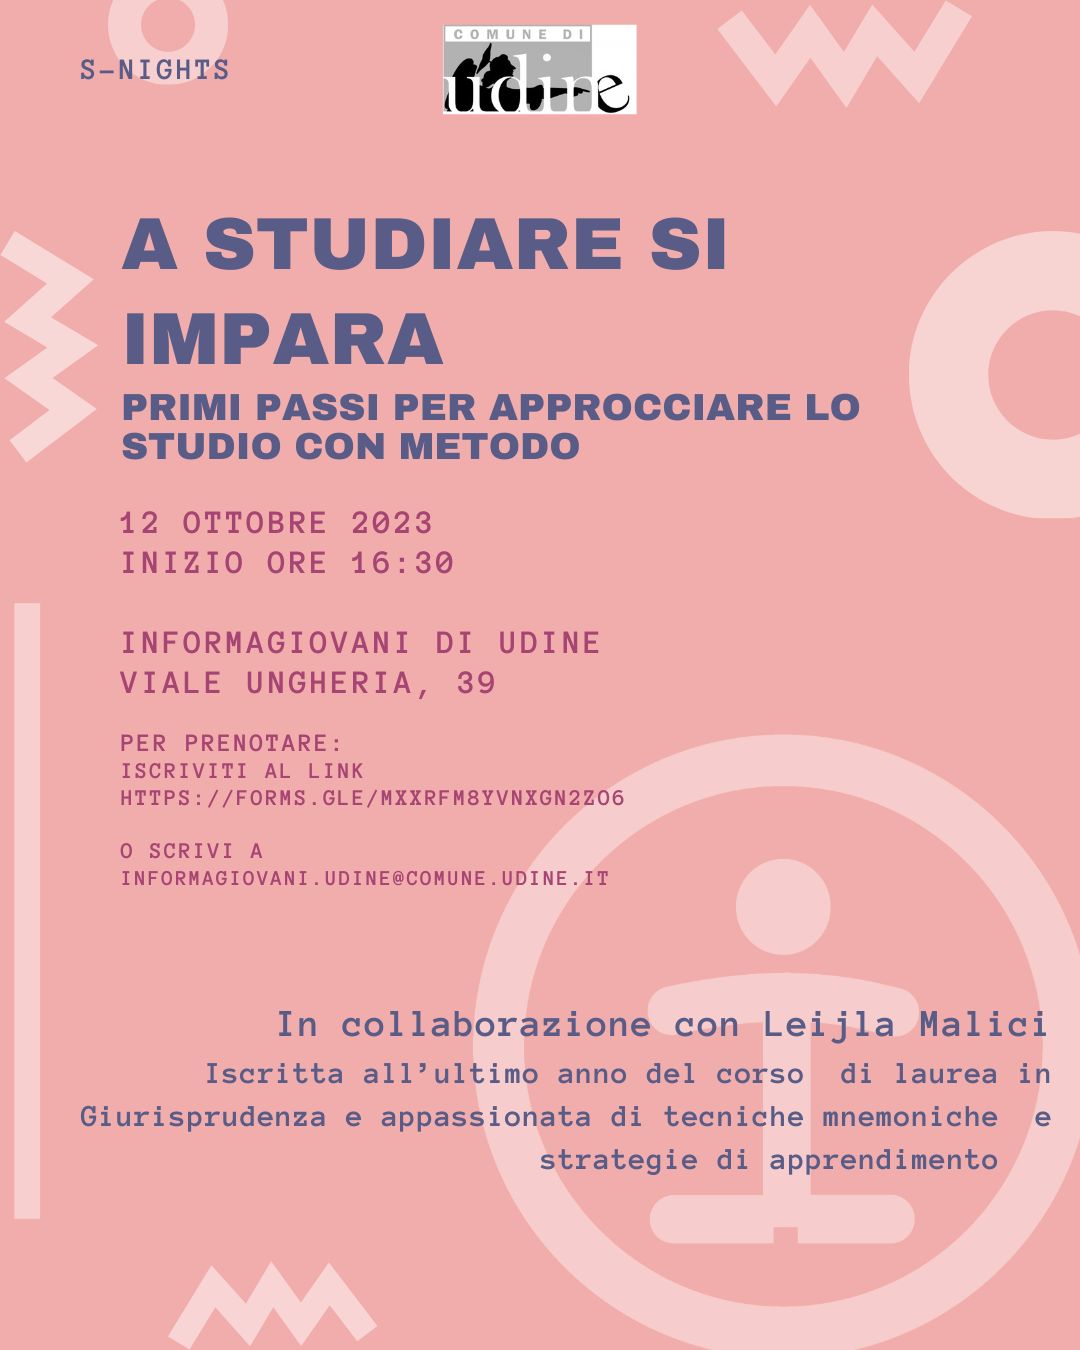 A STUDIARE SI IMPARA - Primi passi per approcciare lo studio con metodo - InformaGiovani di Udine